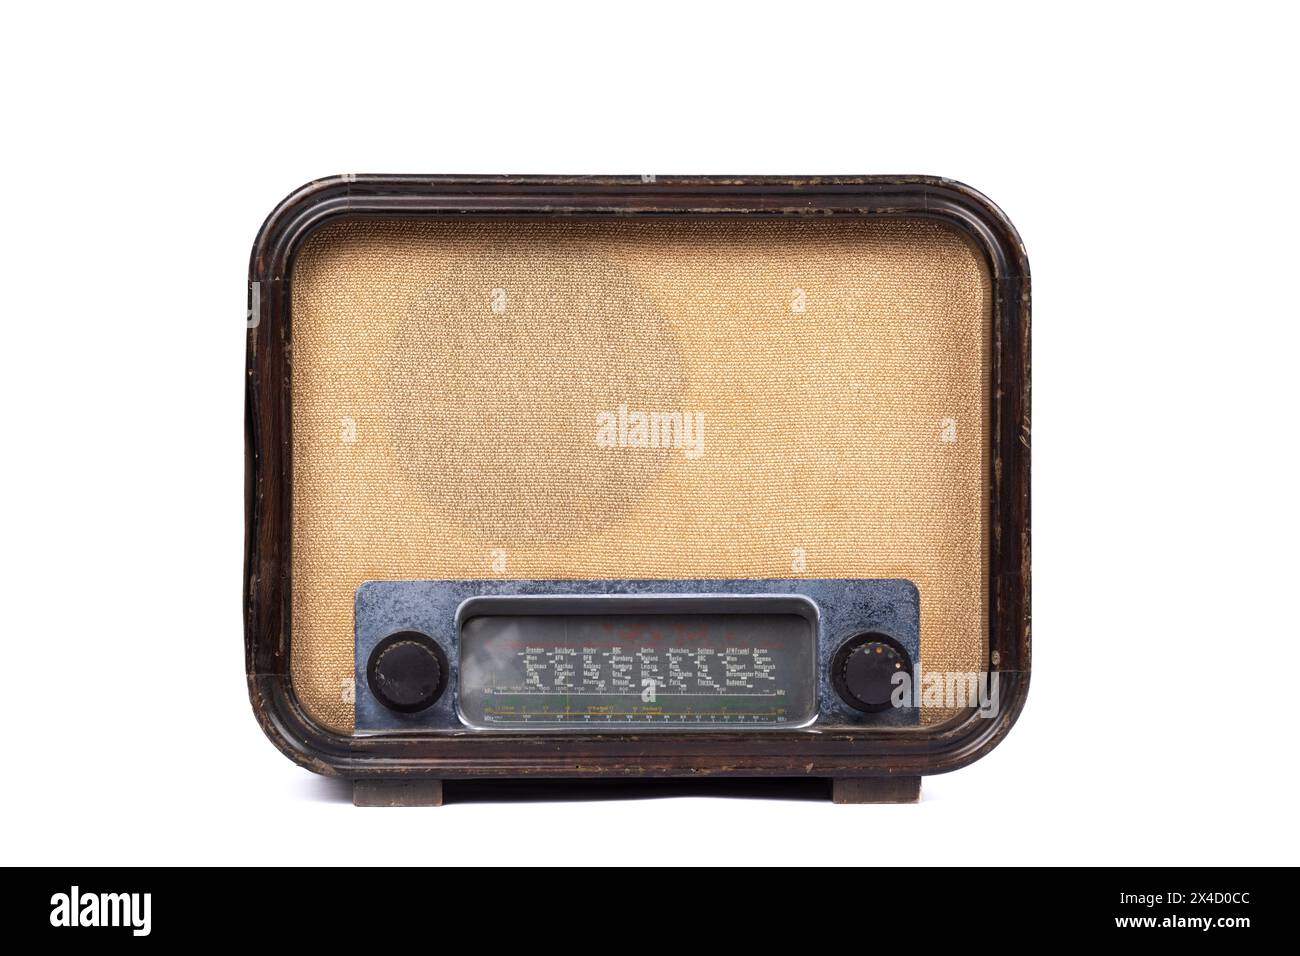 Radio tedesca d'epoca della seconda guerra mondiale su sfondo bianco - dispositivo di comunicazione antico Foto Stock